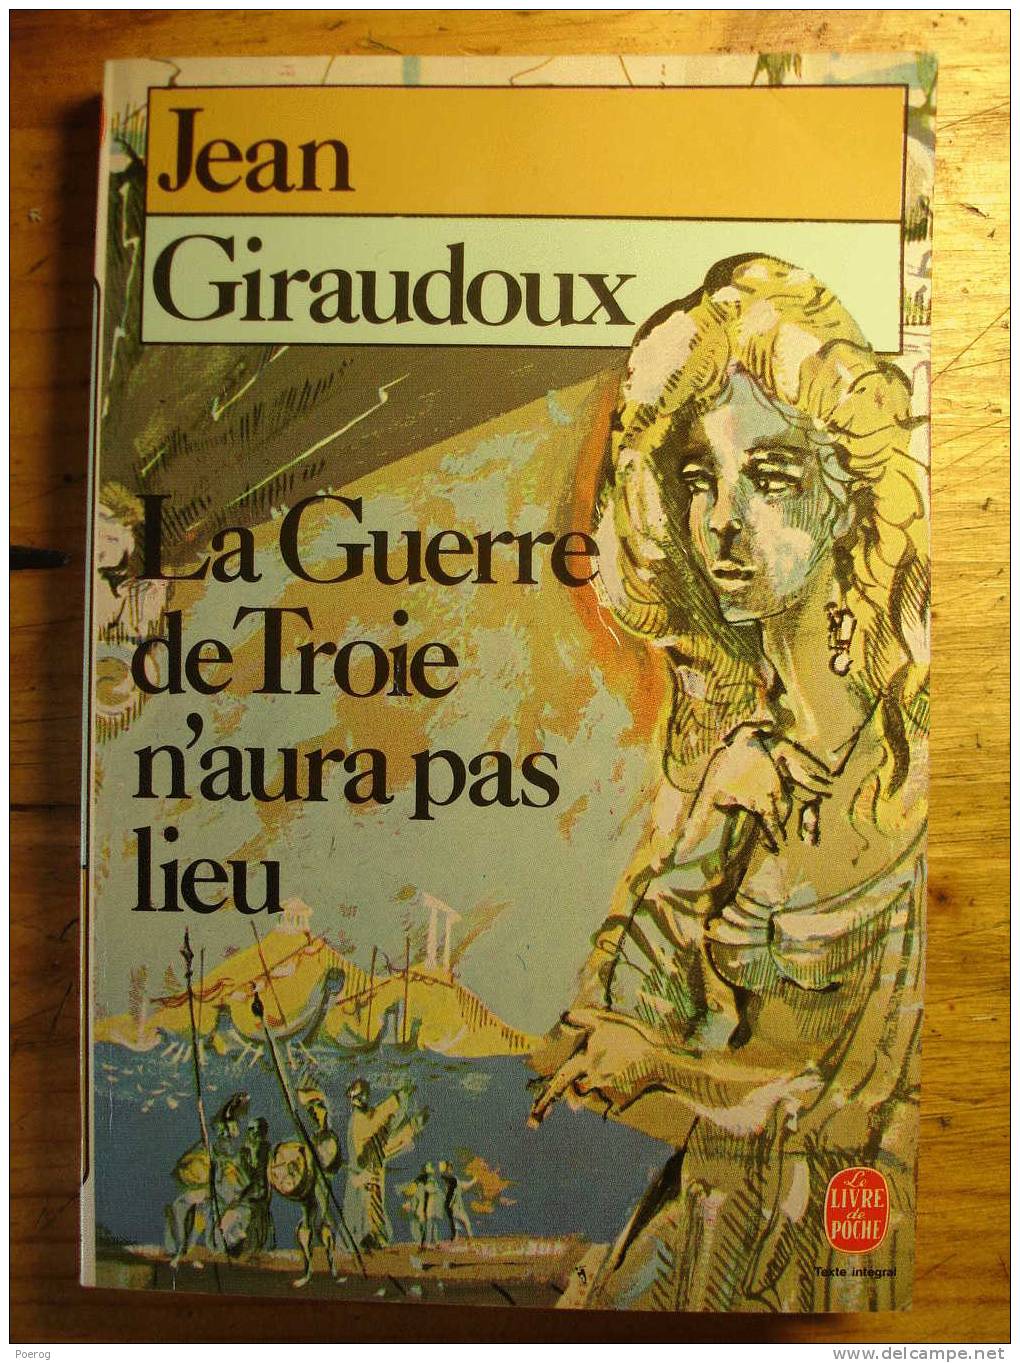 JEAN GIRAUDOUX - LA GUERRE DE TROIE N' AURA PAS LIEU - LE LIVRE DE POCHE N°945 - 1986 - Französische Autoren